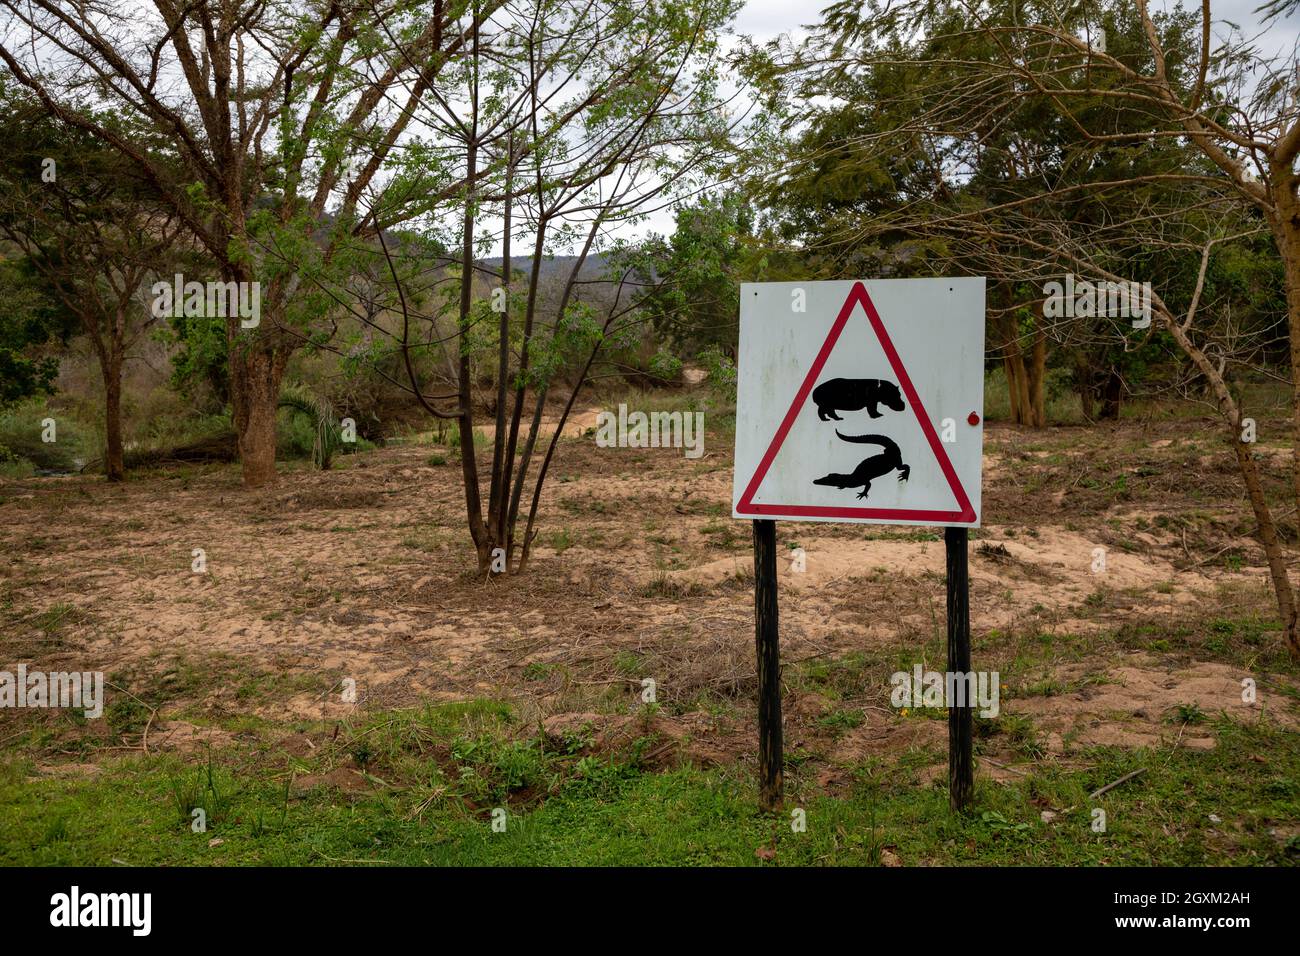 Ein Warnzeichen, das die Menschen warnt, dass sich Flusspferde und Krokodile in der Gegend befinden. Hinter dem Schild befindet sich ein trockenes Flussbett. Stockfoto